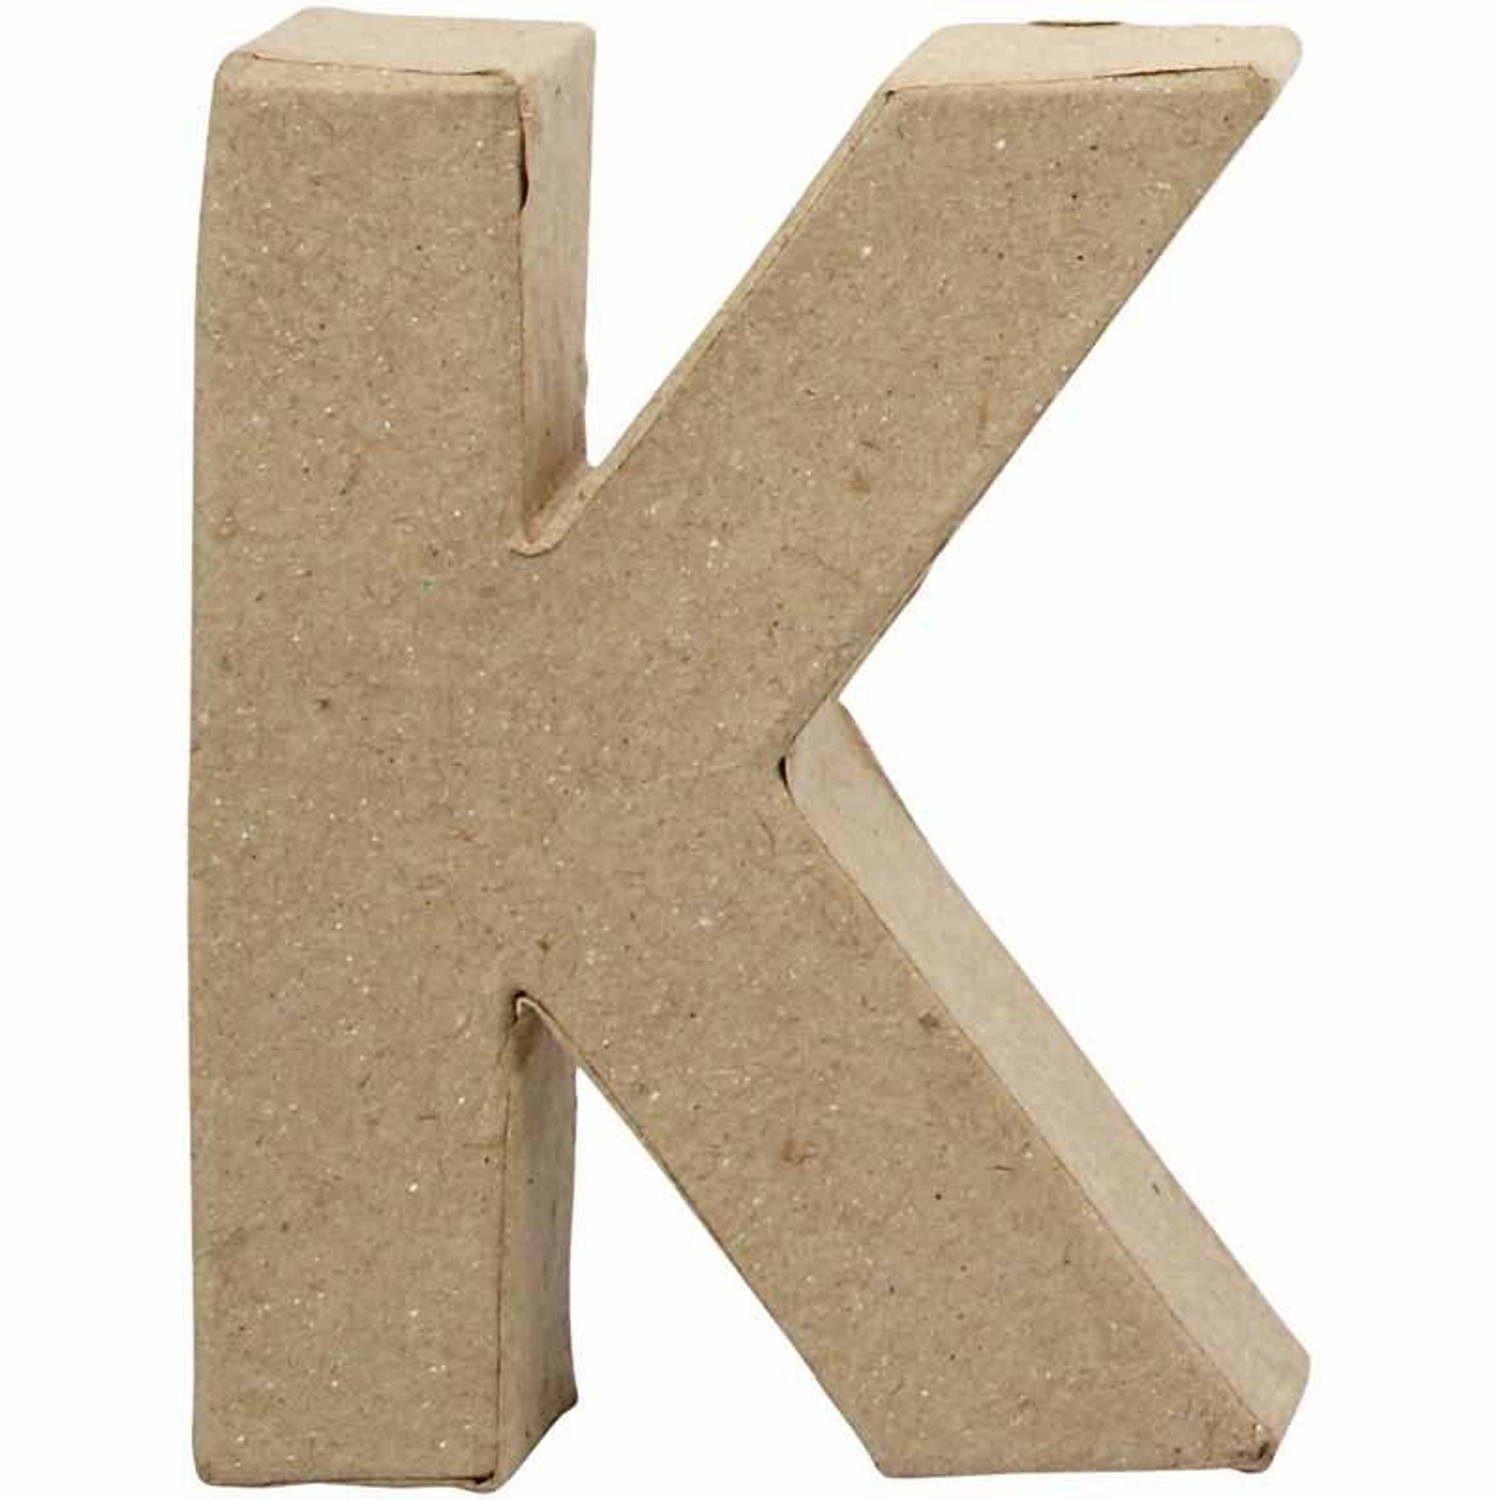 Creative letter K papier mâché 10 cm